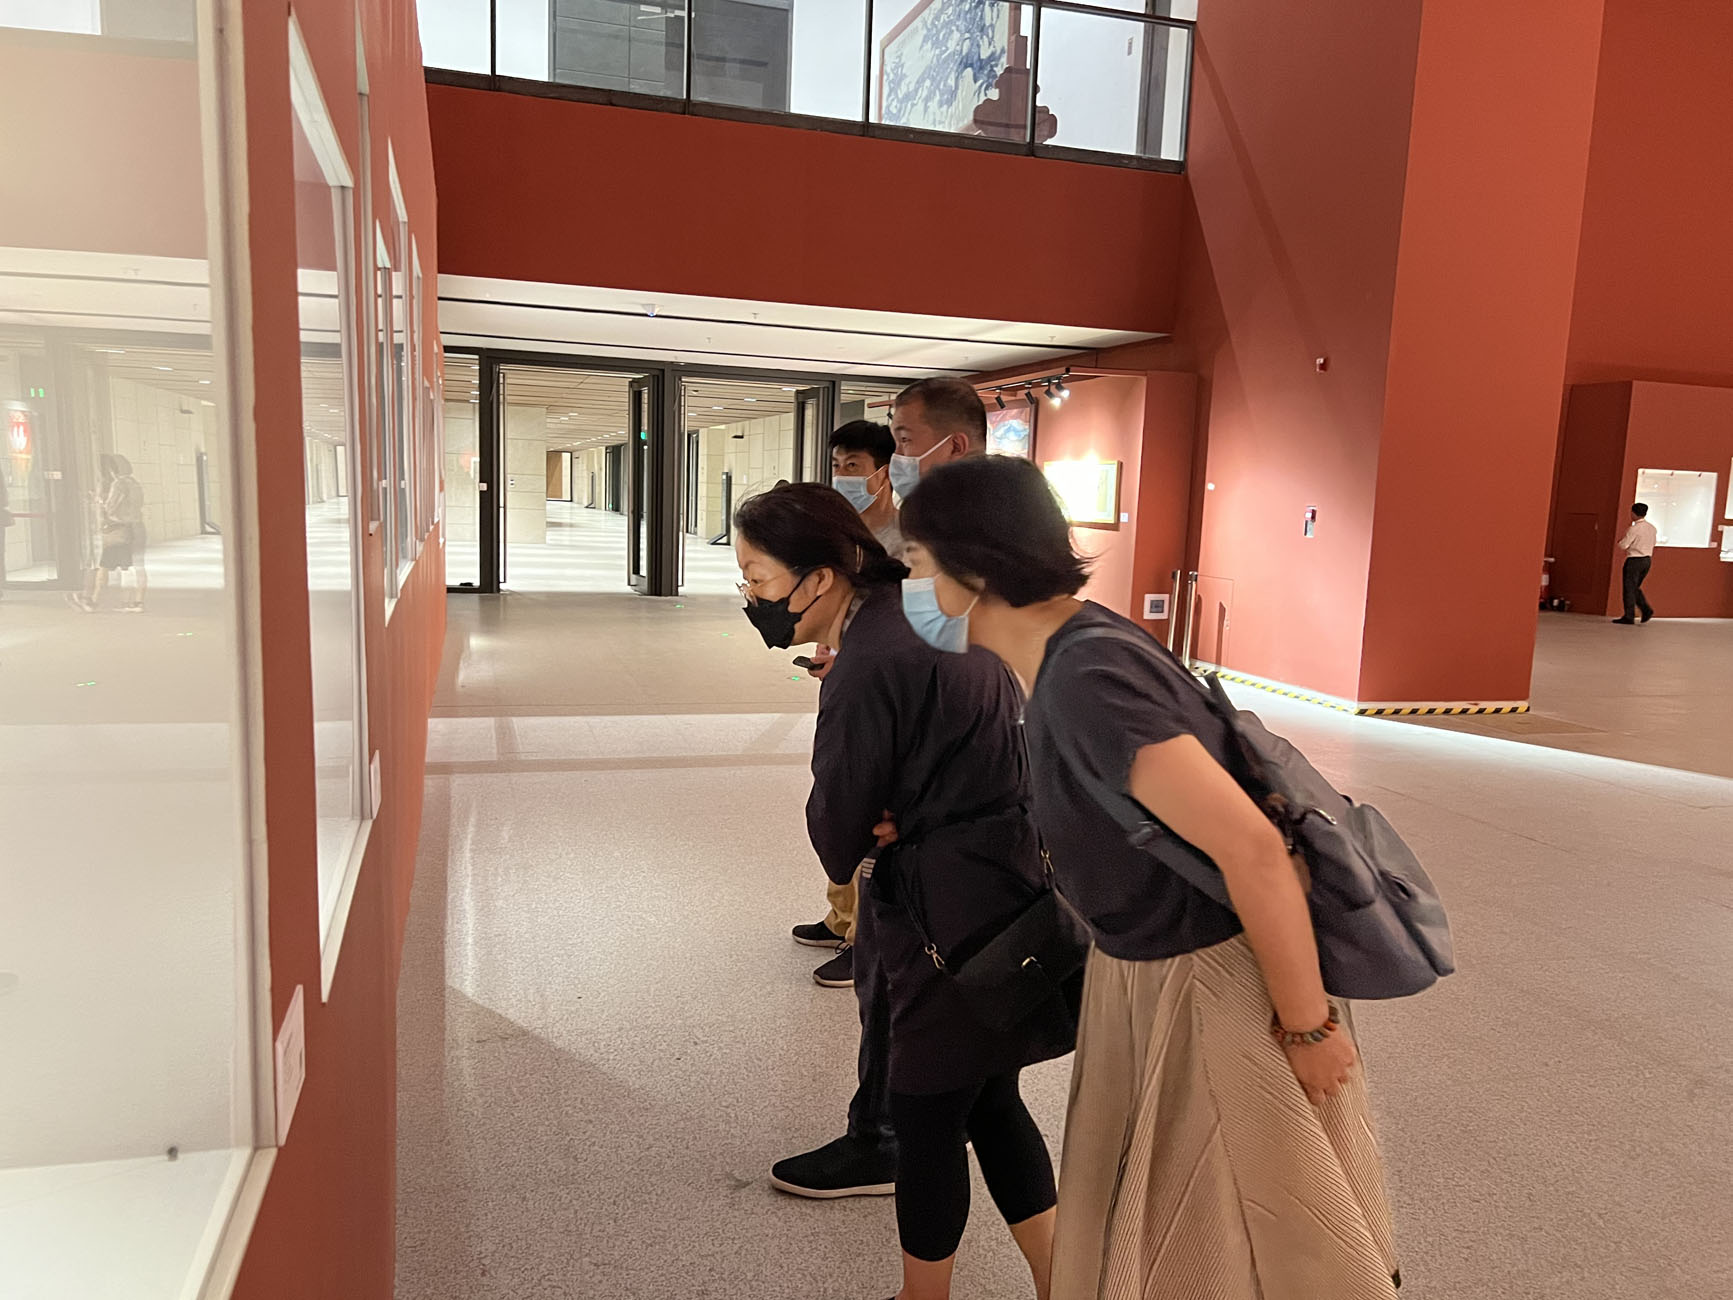 科博馆员赴中国非物质文化遗产馆、中国工艺美术馆参观学习